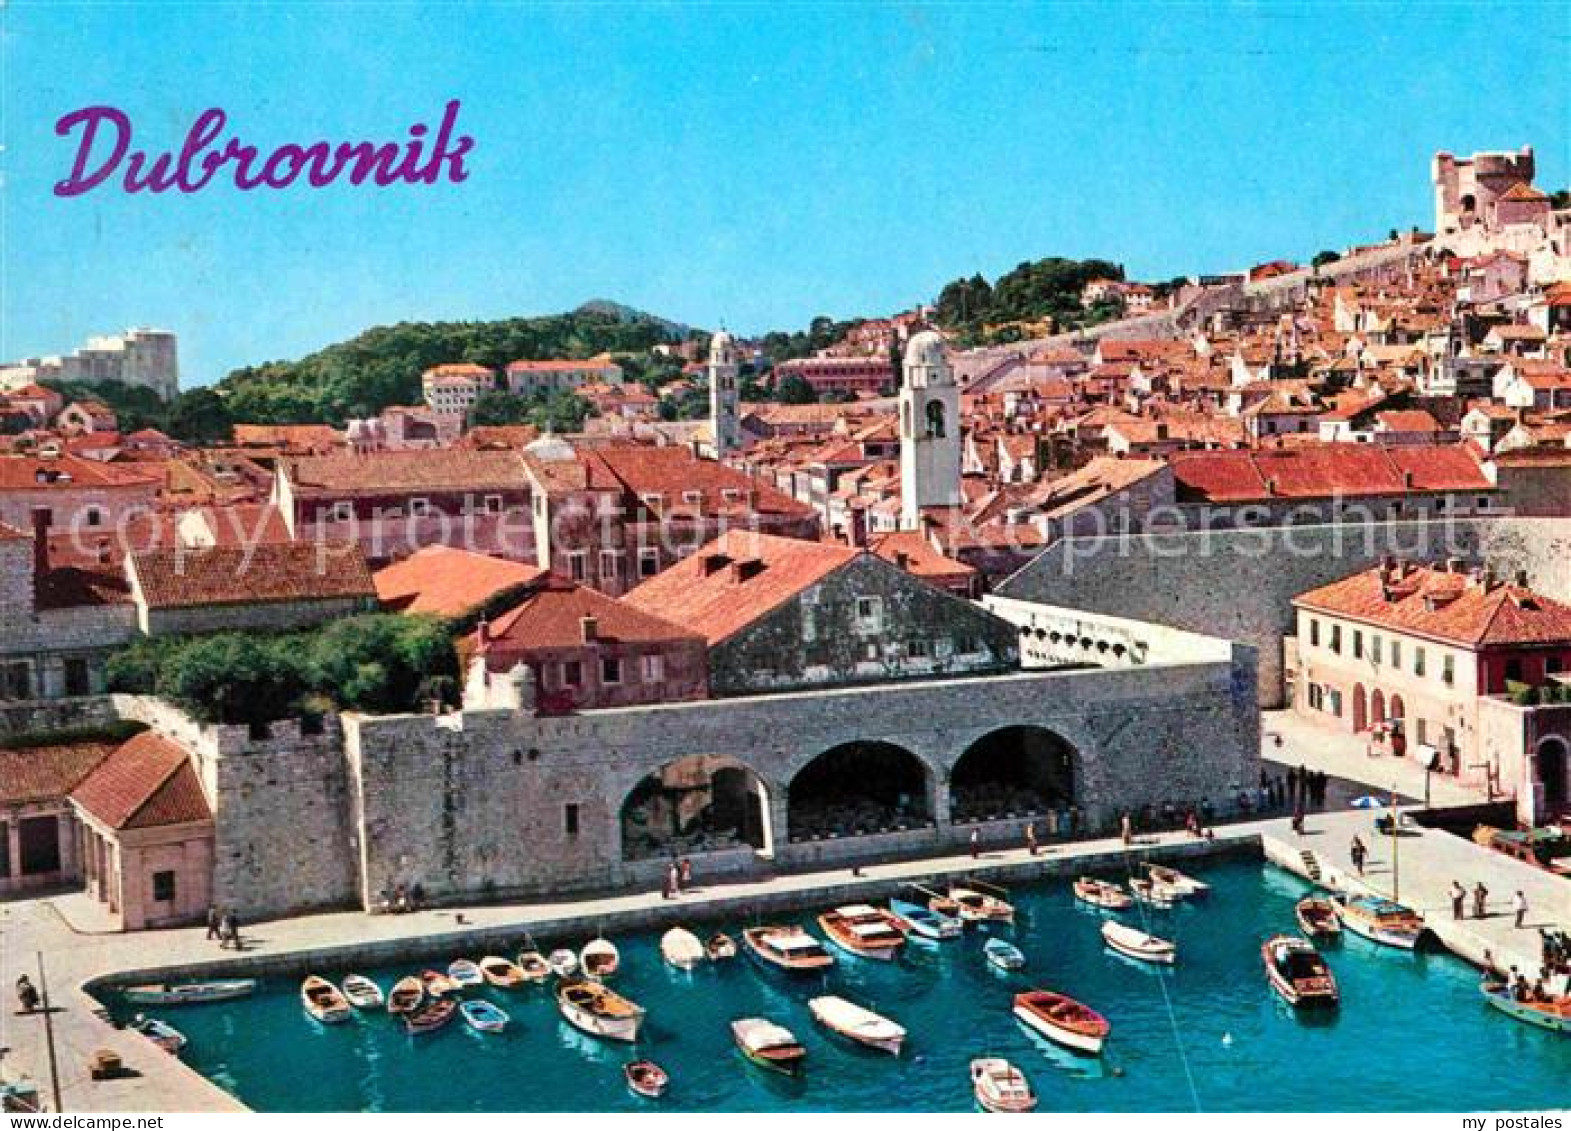 72713313 Dubrovnik Ragusa Hafen Altstadt Croatia - Croatie